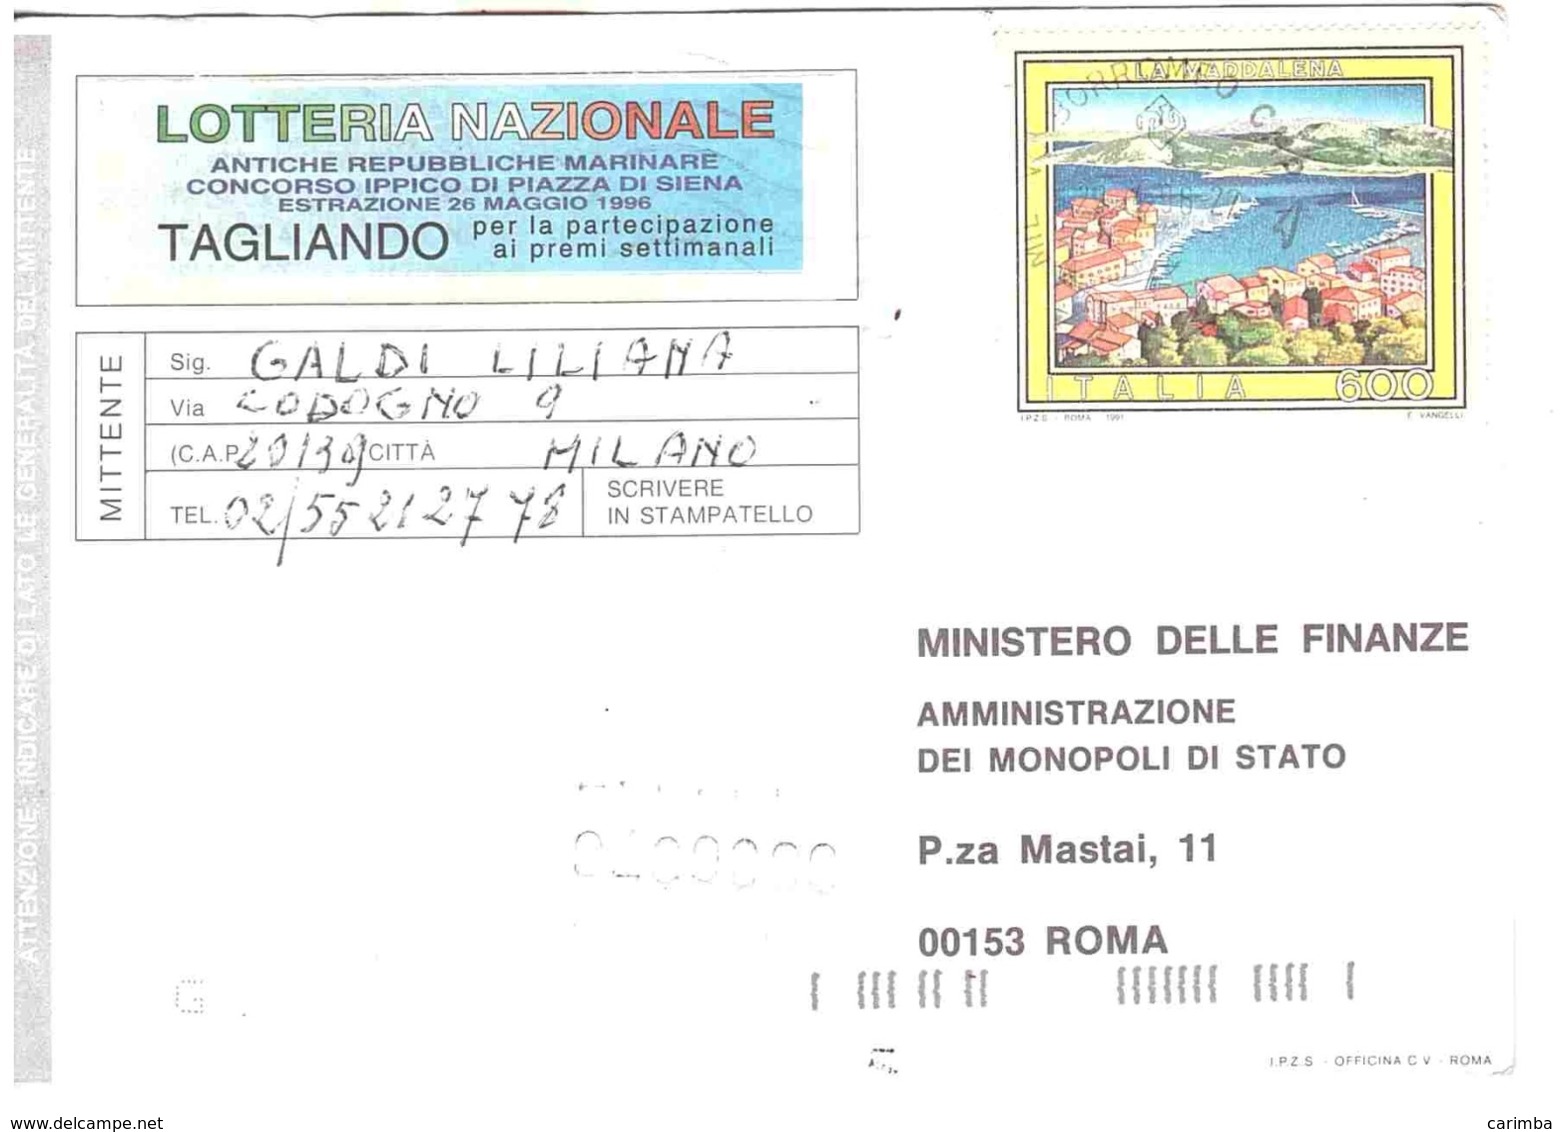 1991 £600 LA MADDALENA SU CARTOLINA LOTTERIA NAZIONALE - Pubblicitari